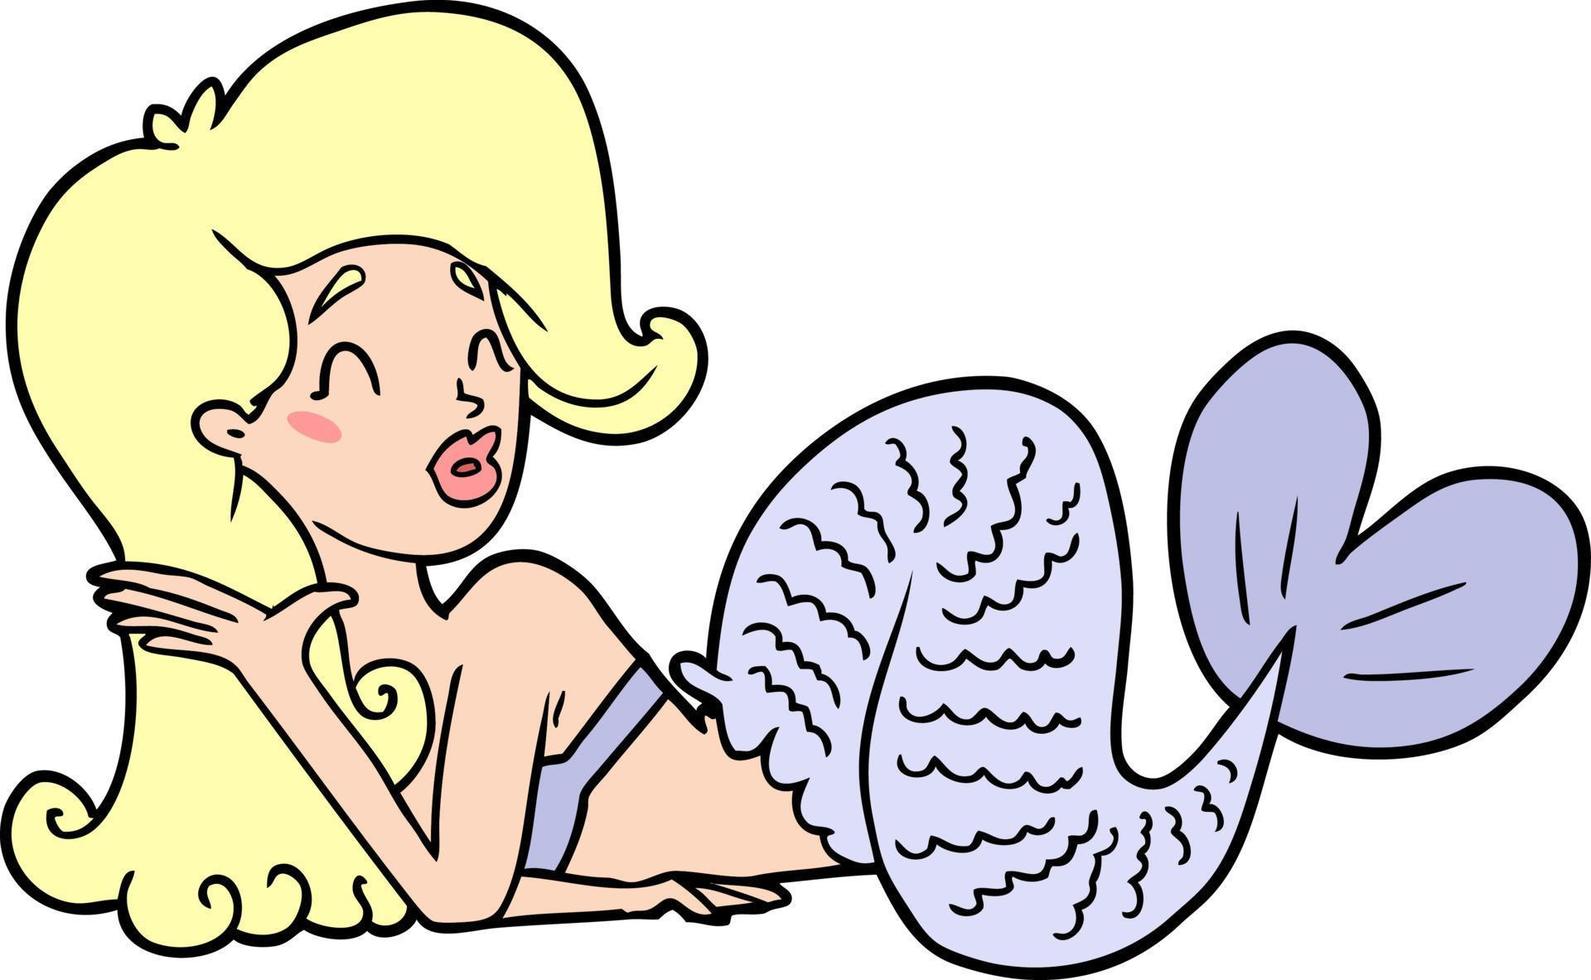 Cartoon cute mermaid vector